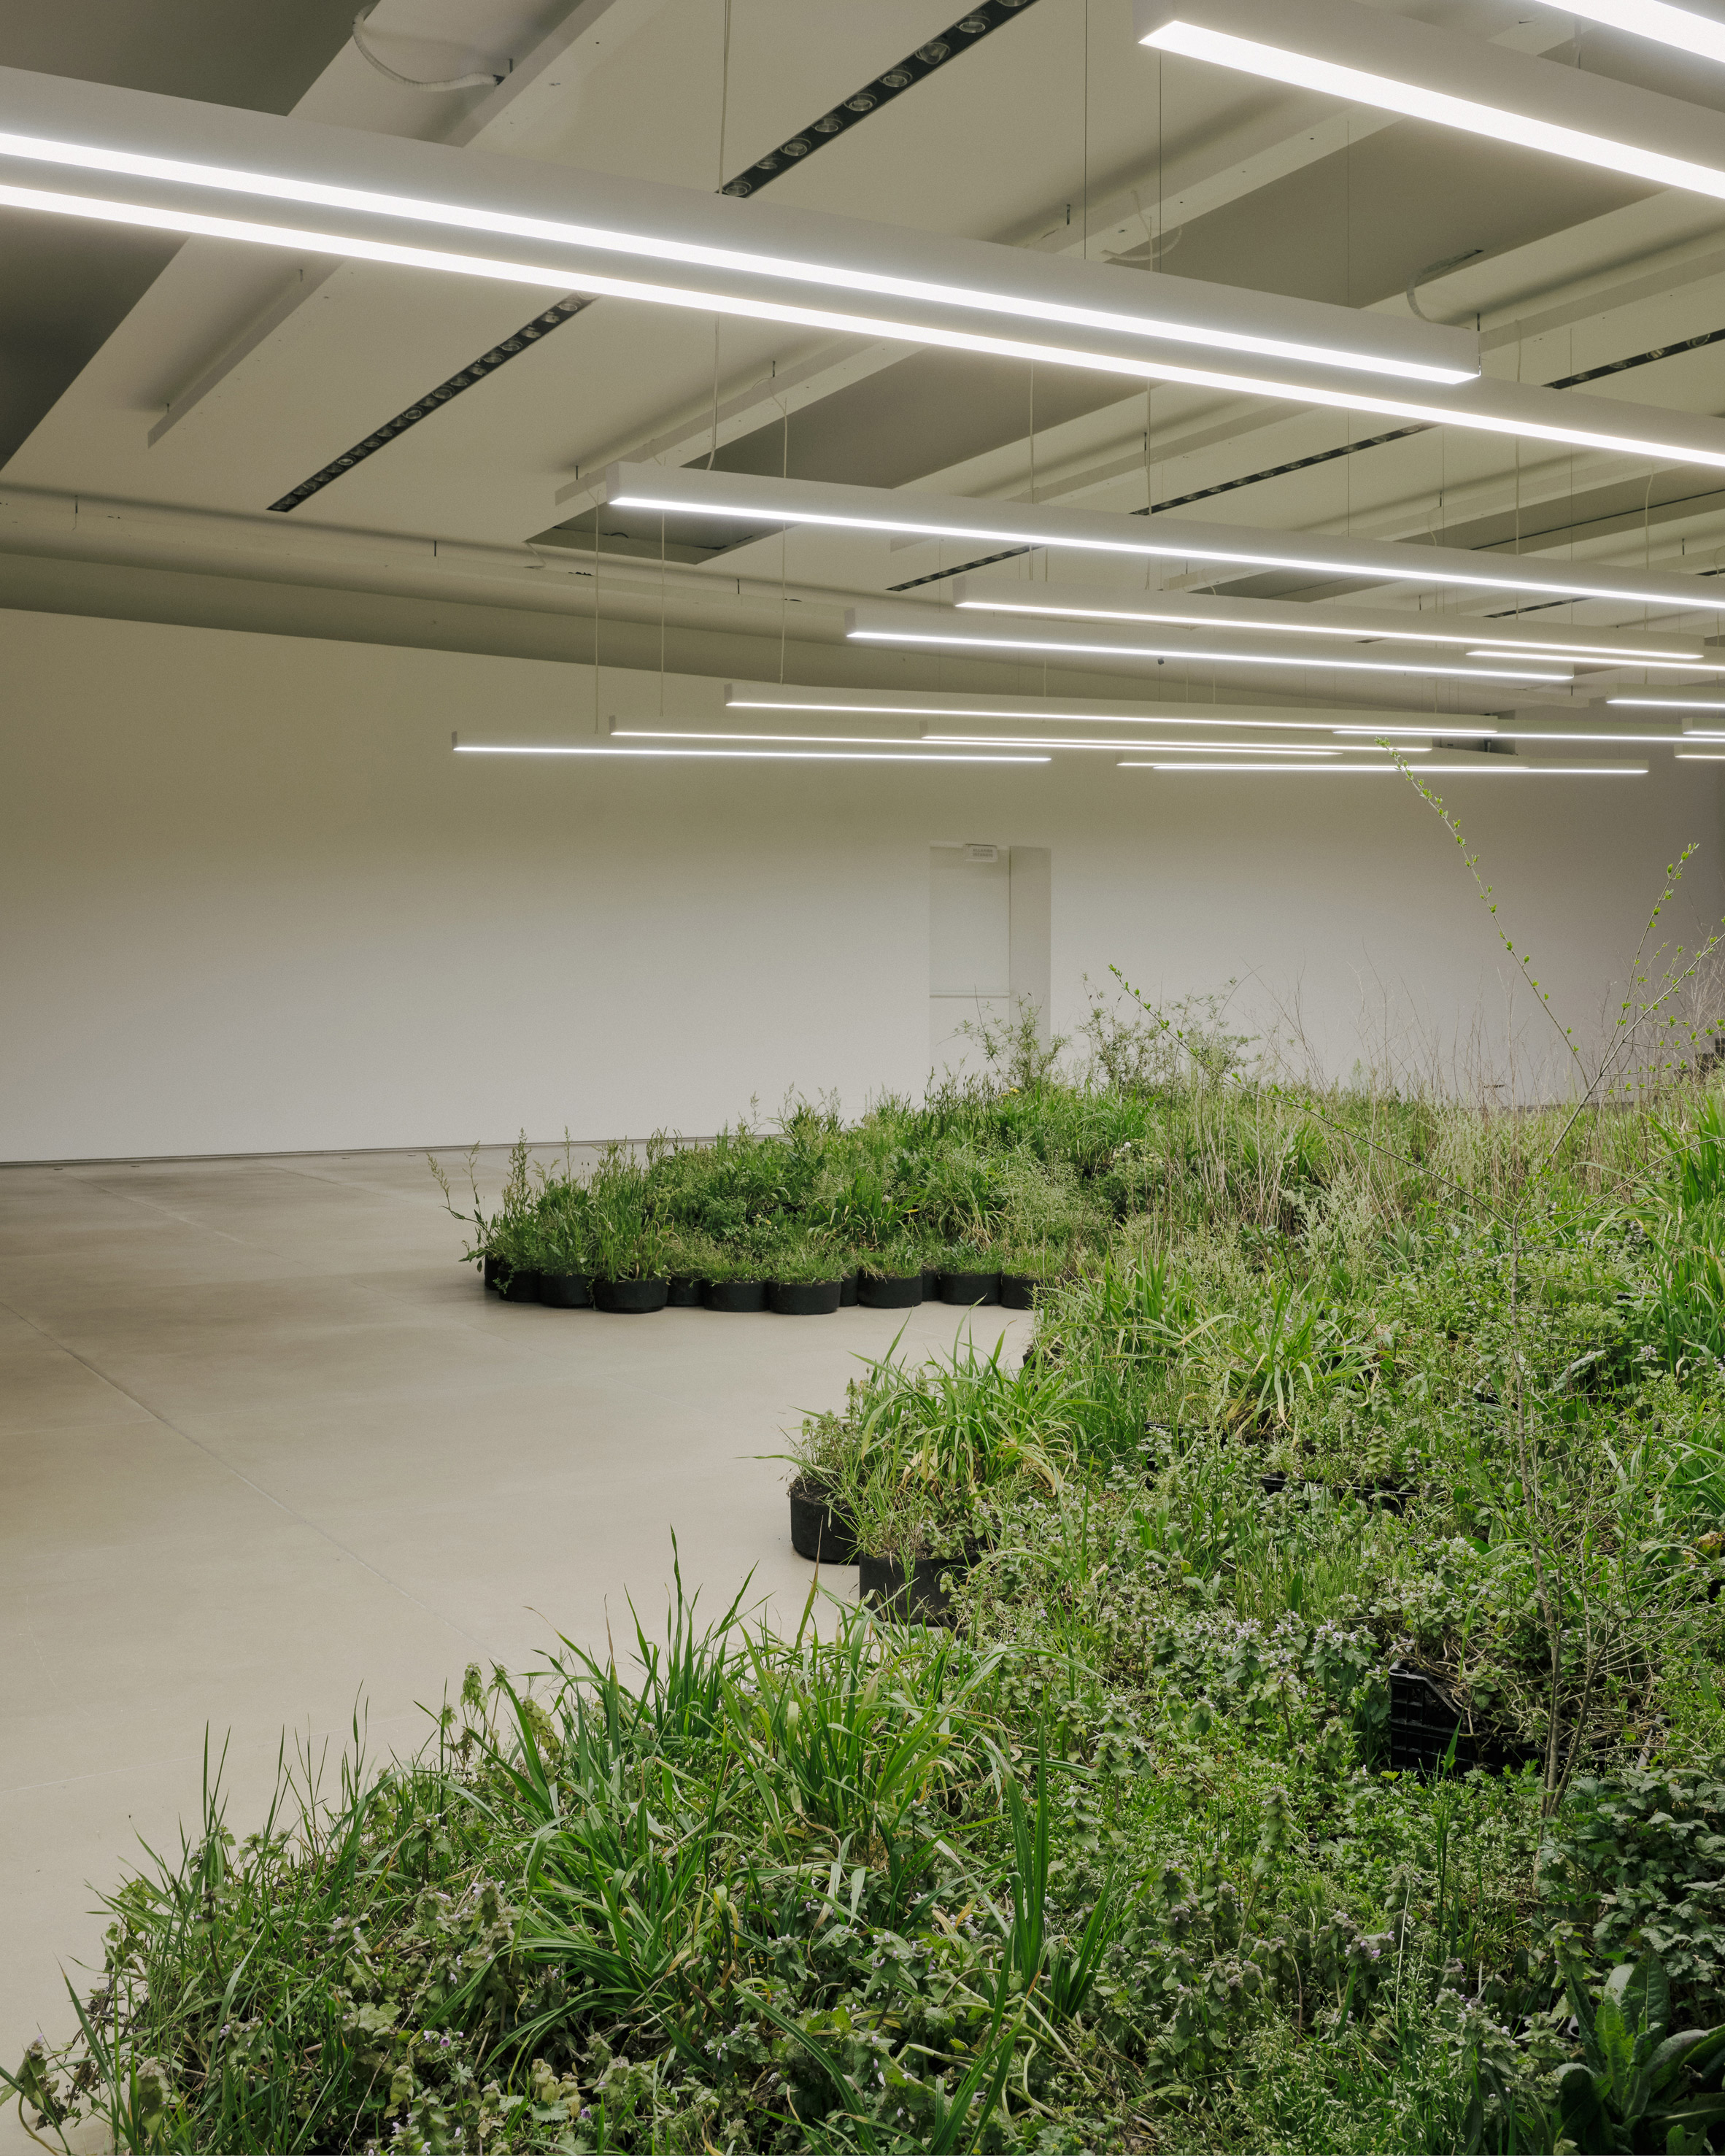 Adjacent Field installation of plants by Linda Tegg at Jil Sander for Milan design week